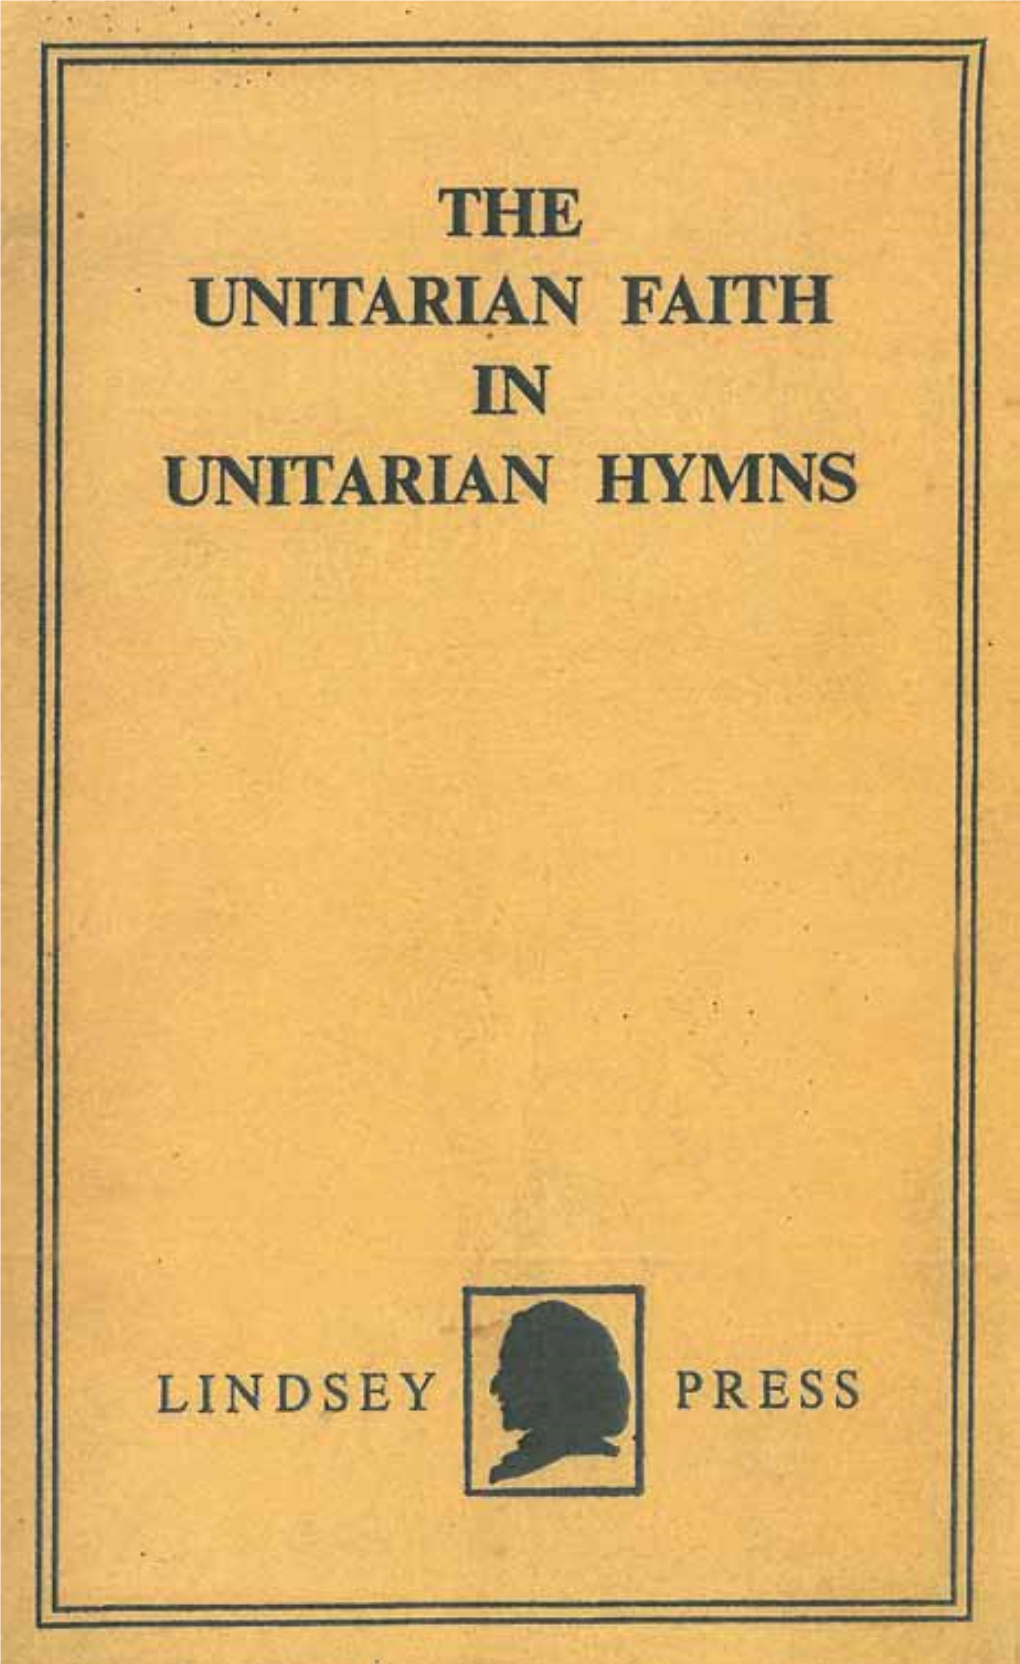 The Unitarian Faith in Unitarian Hymns